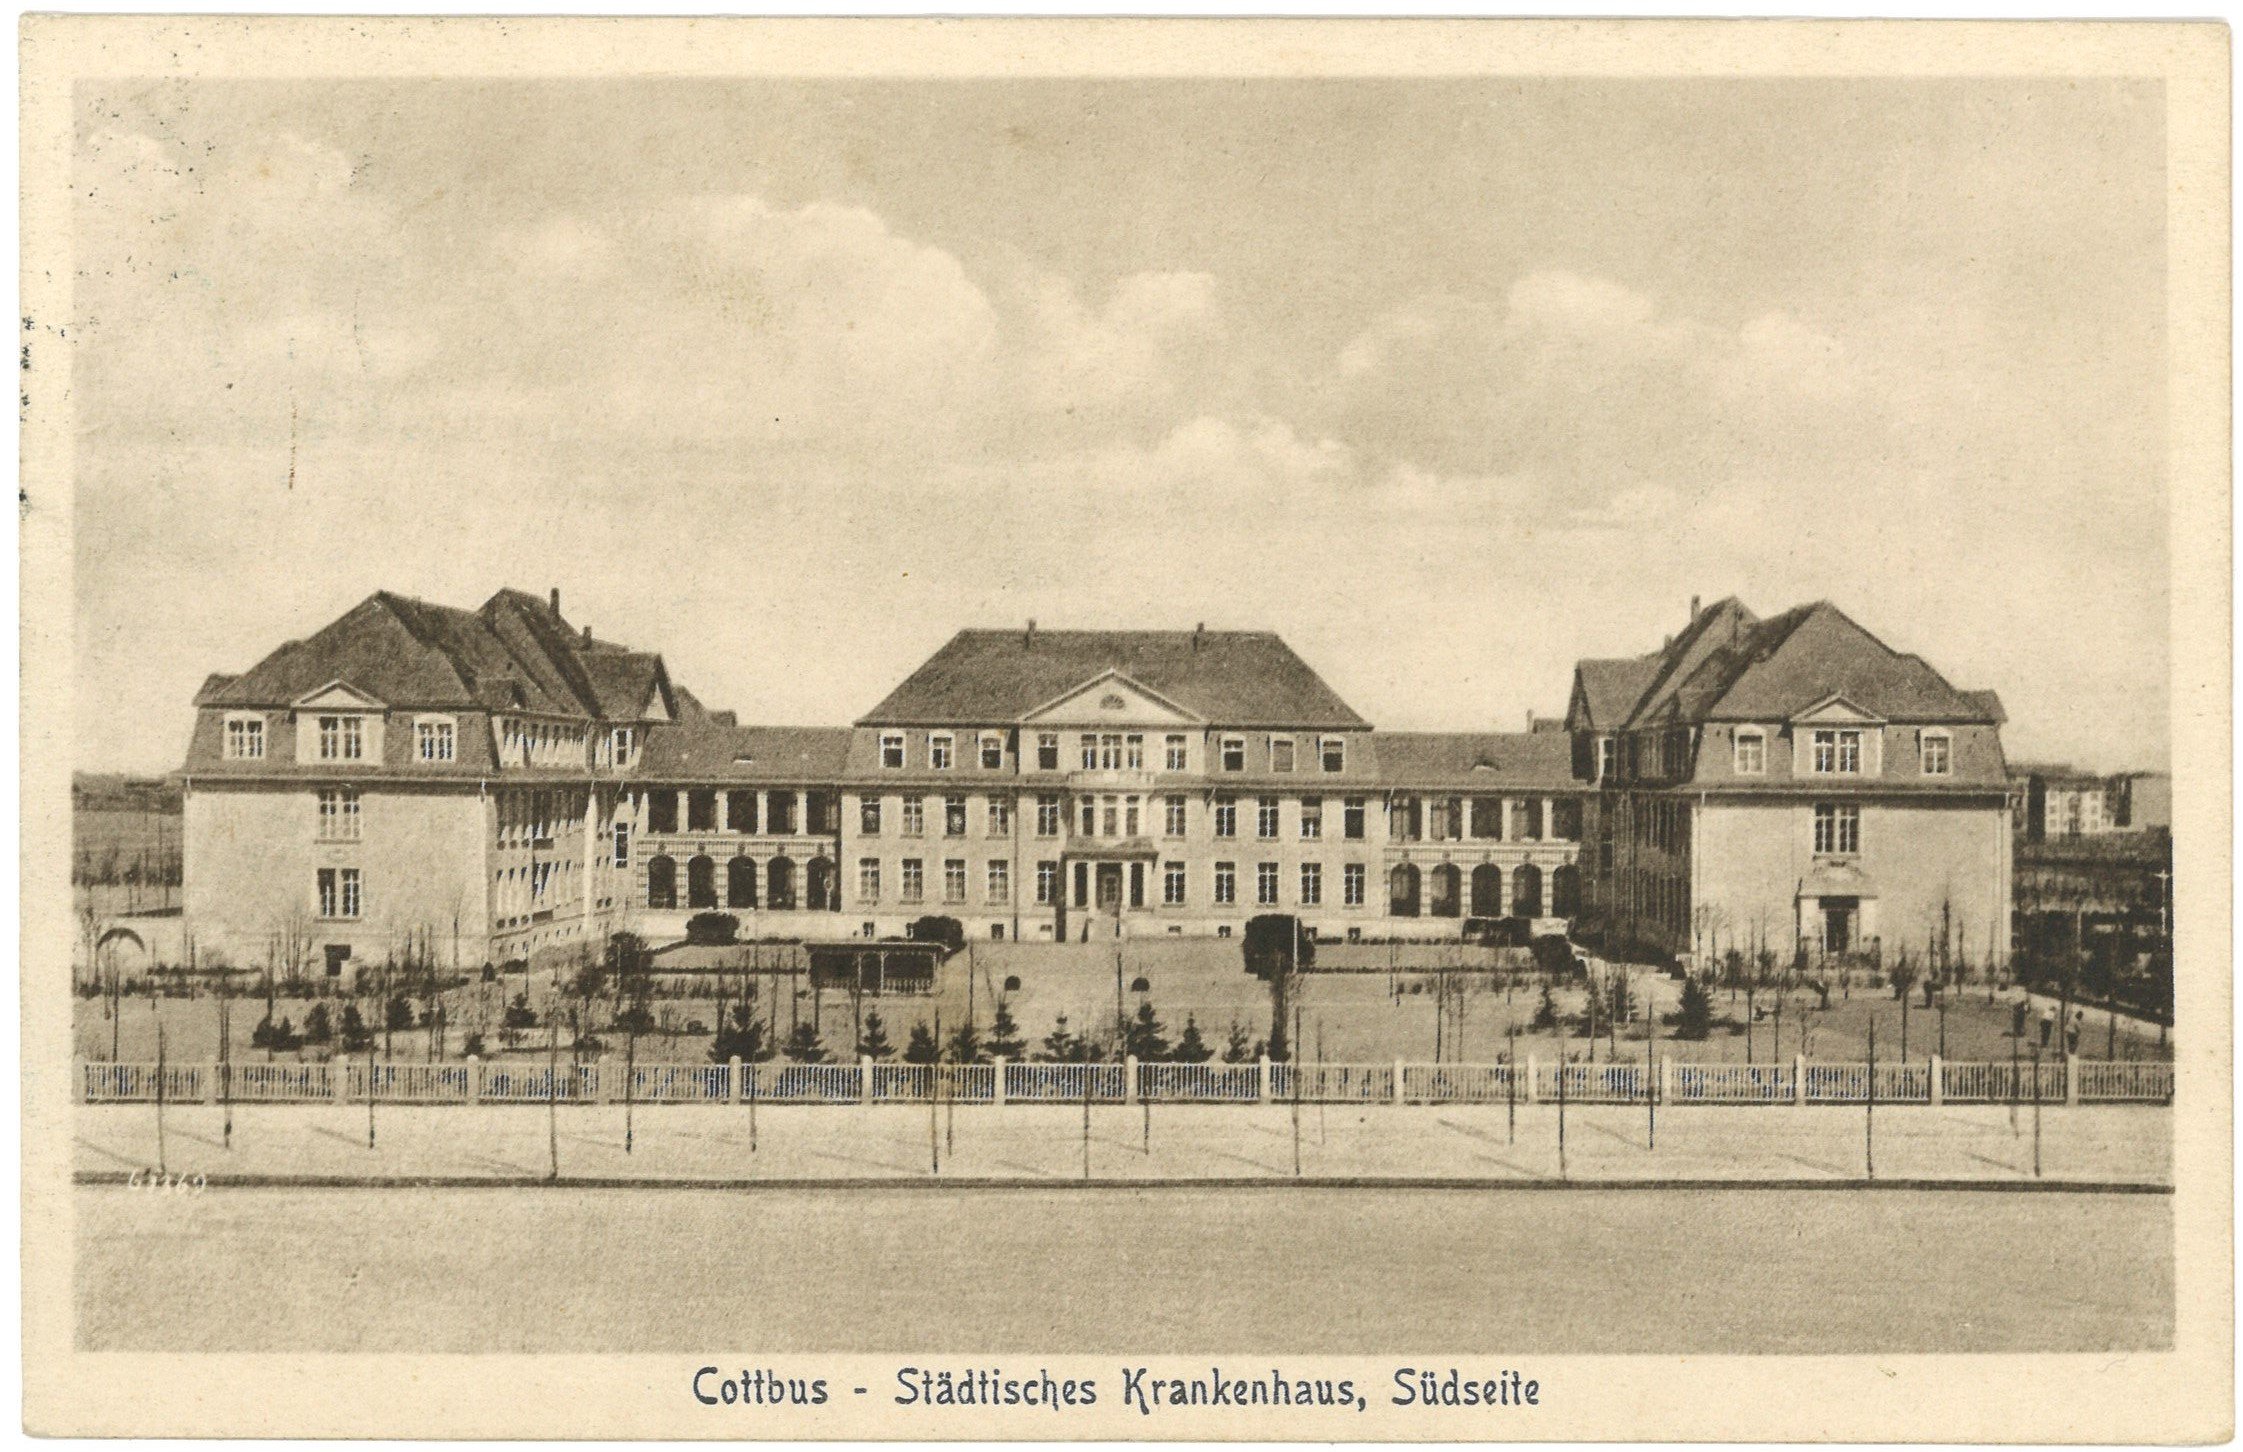 Cottbus: Städtisches Krankenhaus, Südseite (Landesgeschichtliche Vereinigung für die Mark Brandenburg e.V. CC BY)